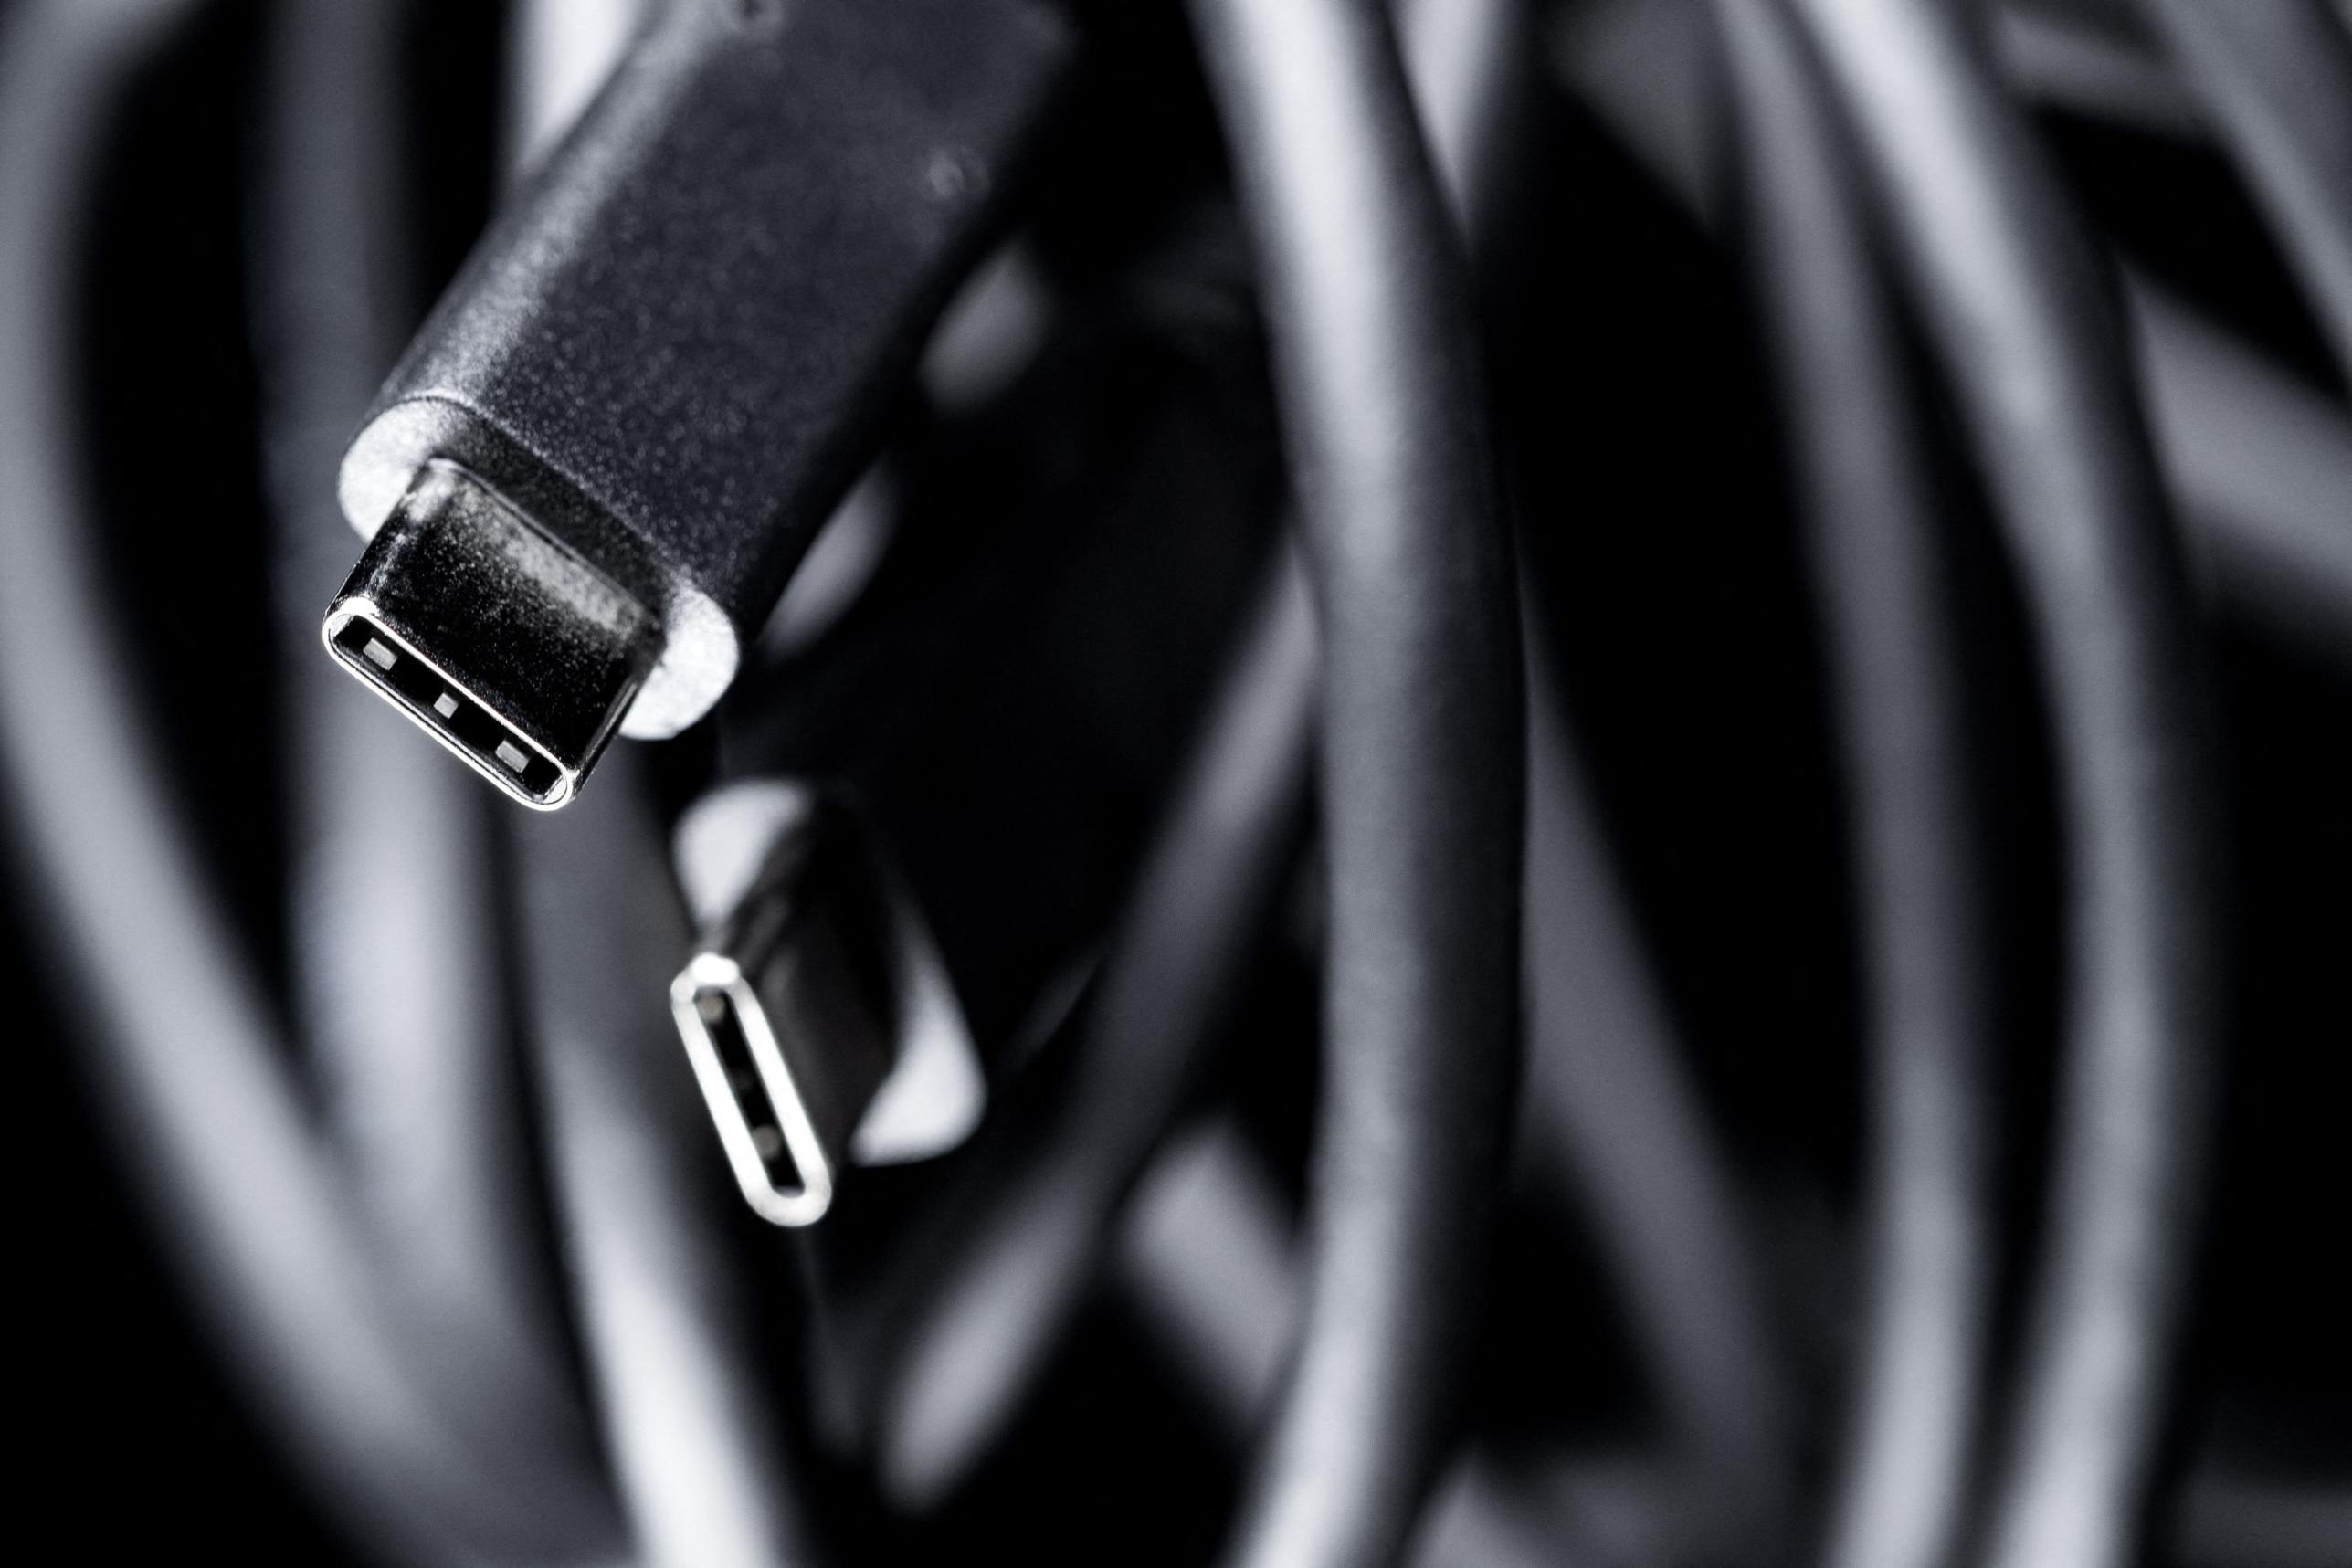 Las nuevas conexiones USB reemplazarían los cables eléctricos  Vigilancia  Online-Mercados Unidos-Sistemas de Seguridad Electronica-Neuquén